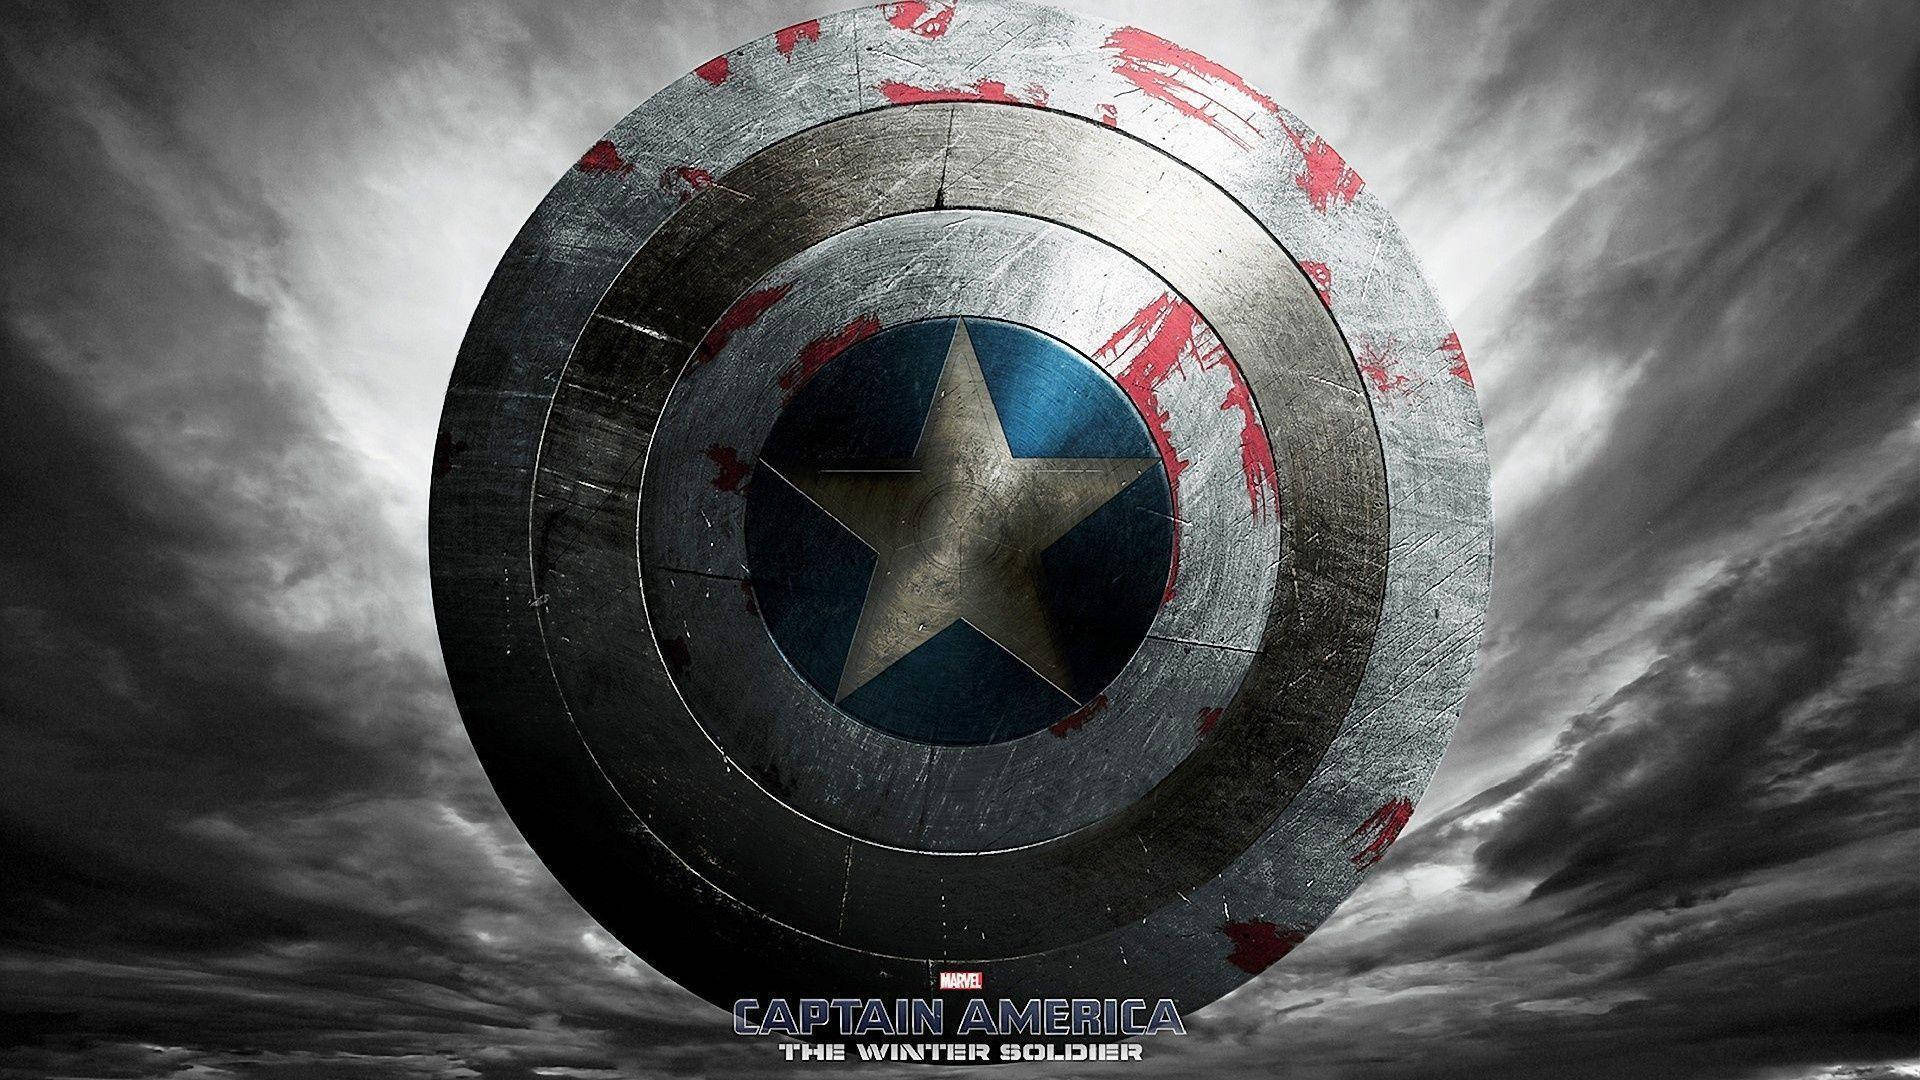 Escudodel Capitán América Desgastado O En Mal Estado. Fondo de pantalla